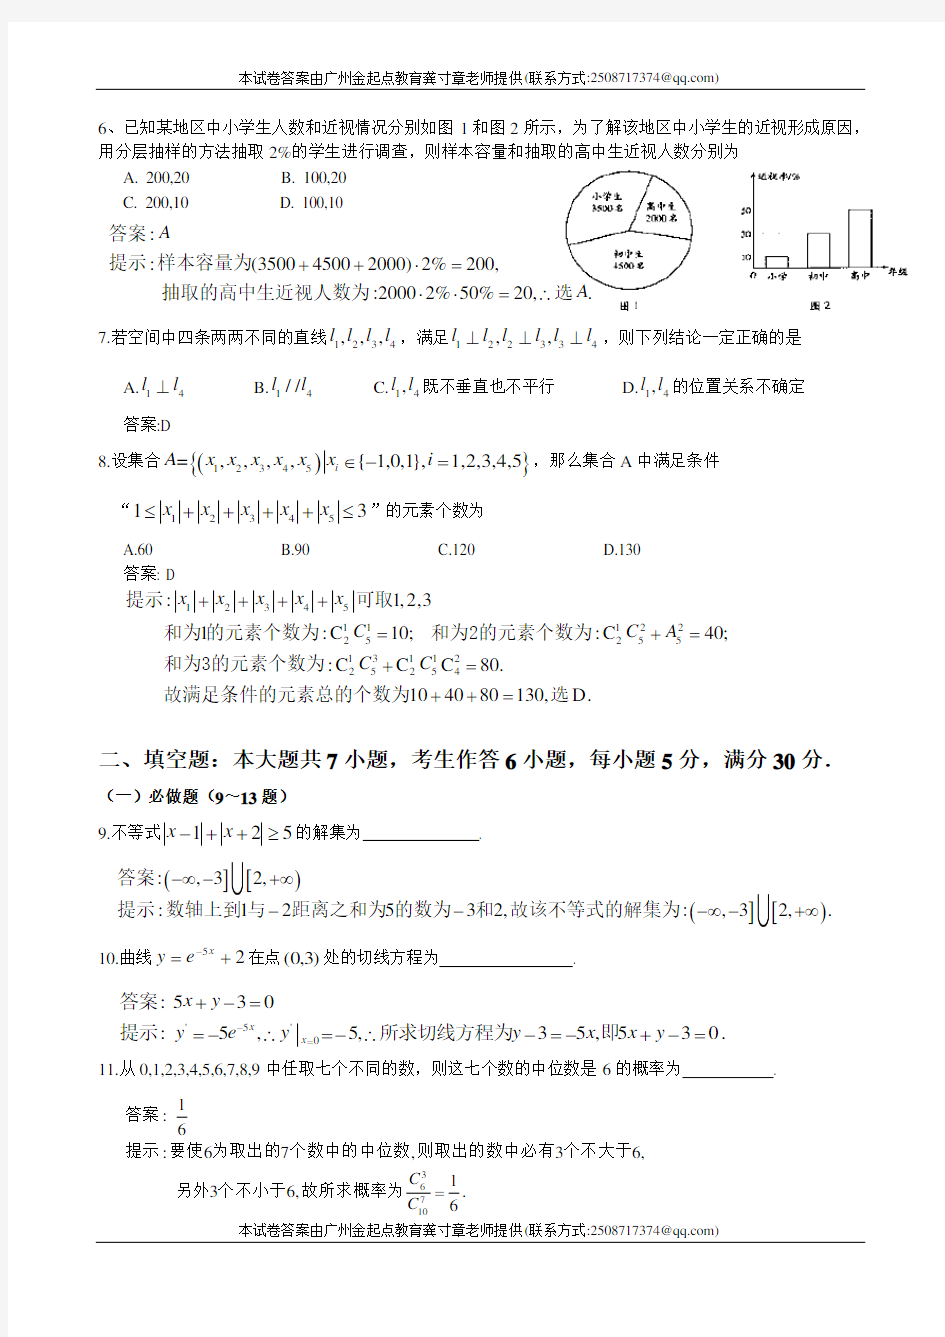 (完整版)2014广东高考理科数学试题及答案